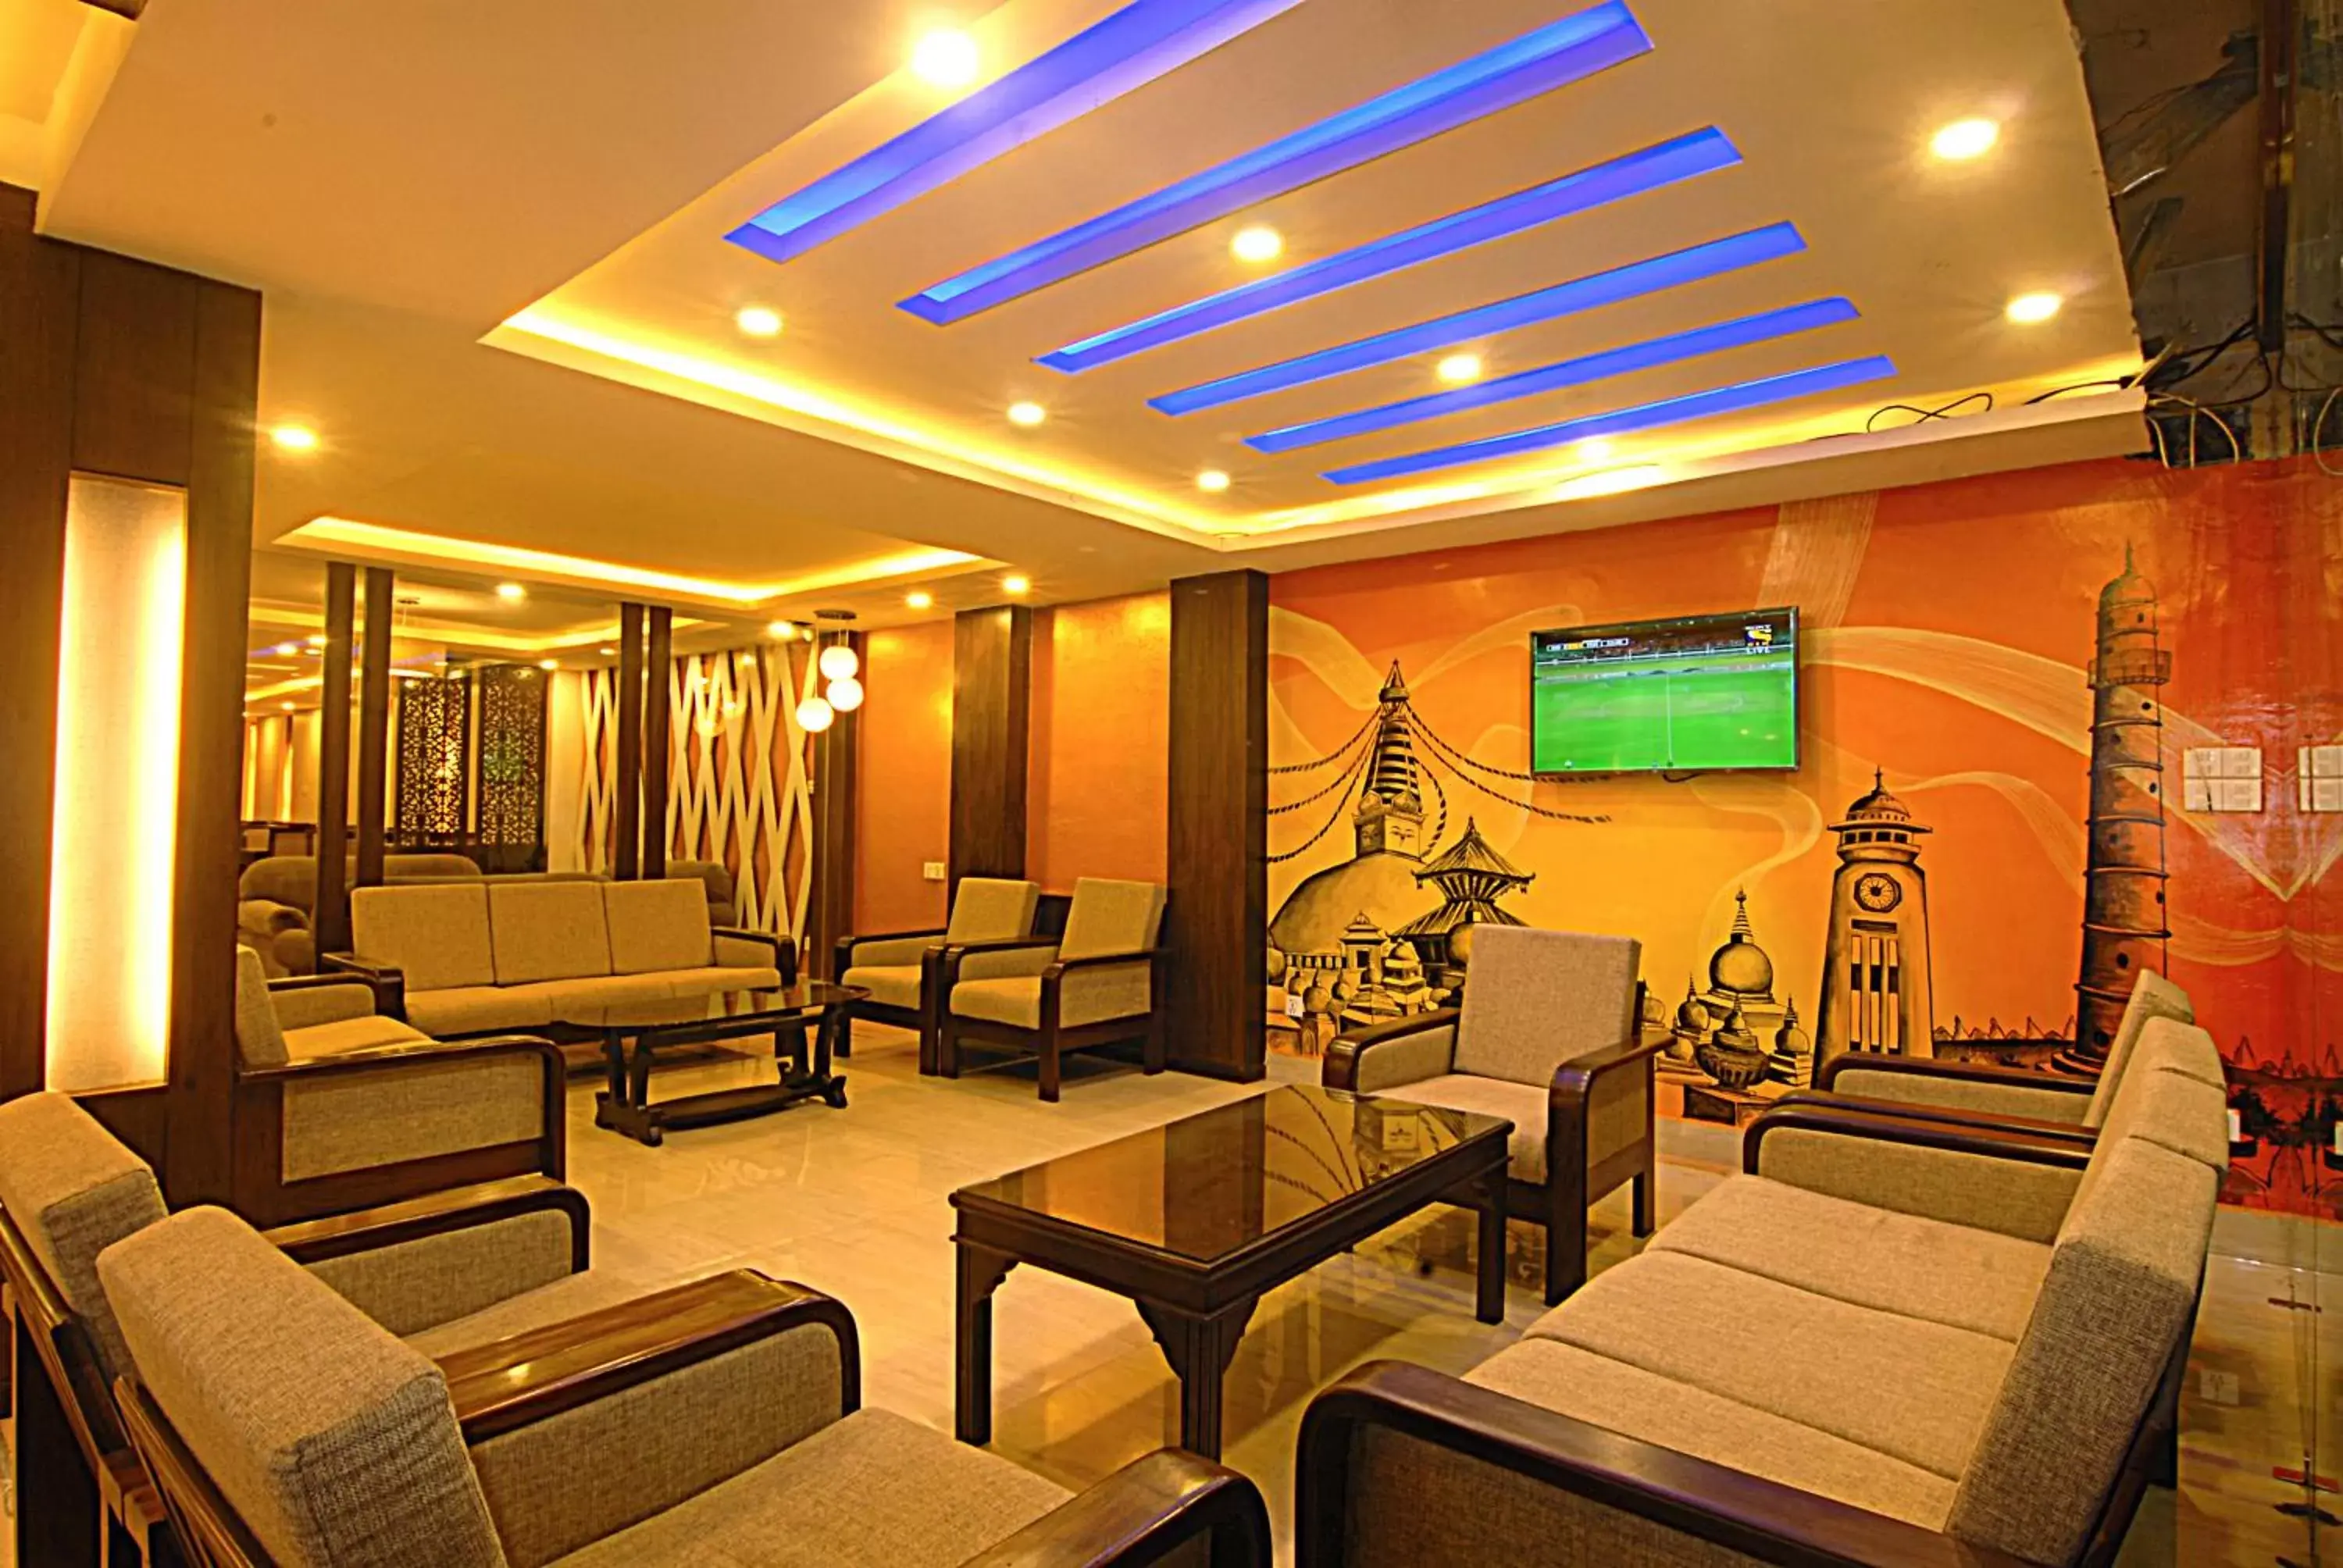 Lobby or reception in Kathmandu Grand Hotel